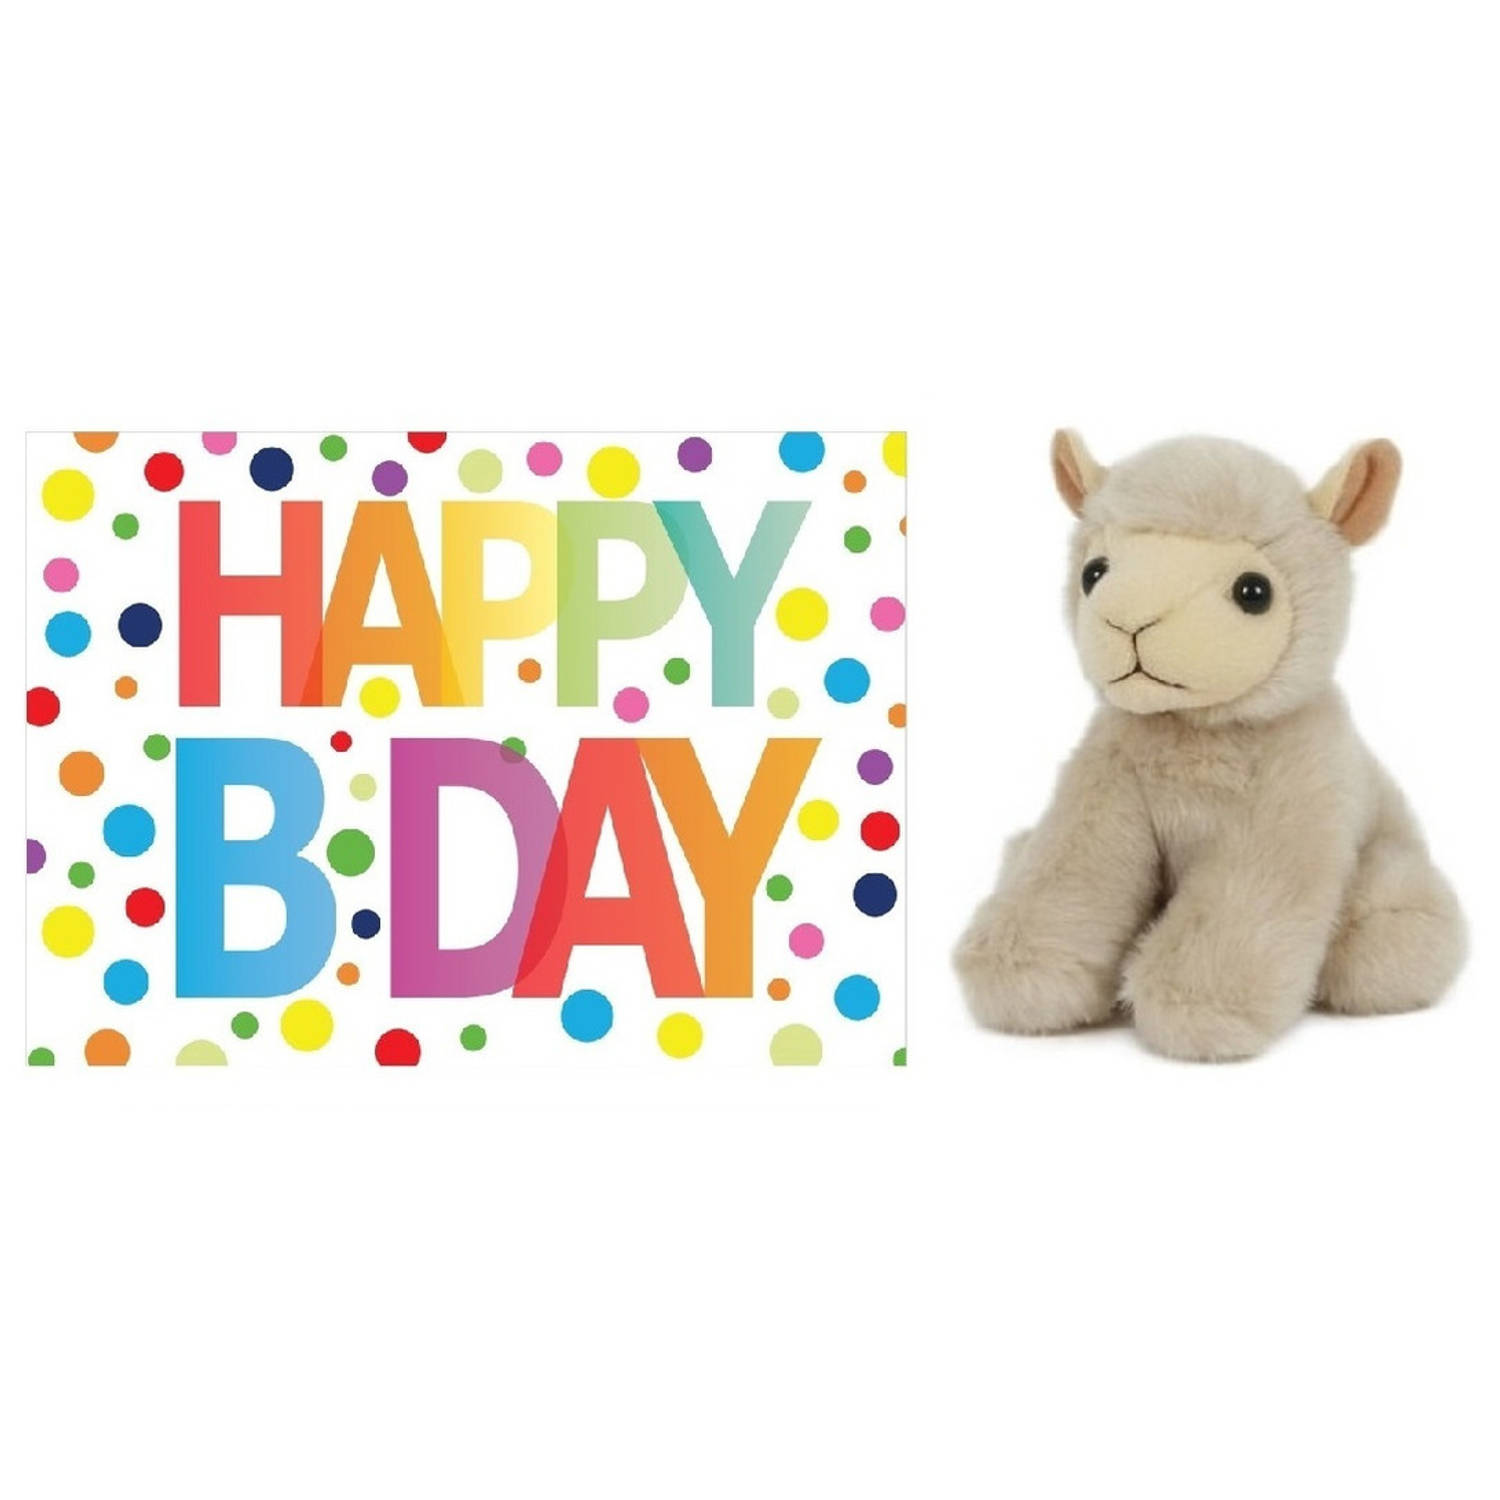 Pluche knuffel lammetje-schaap 13 cm met A5-size Happy Birthday wenskaart Knuffel boederijdieren